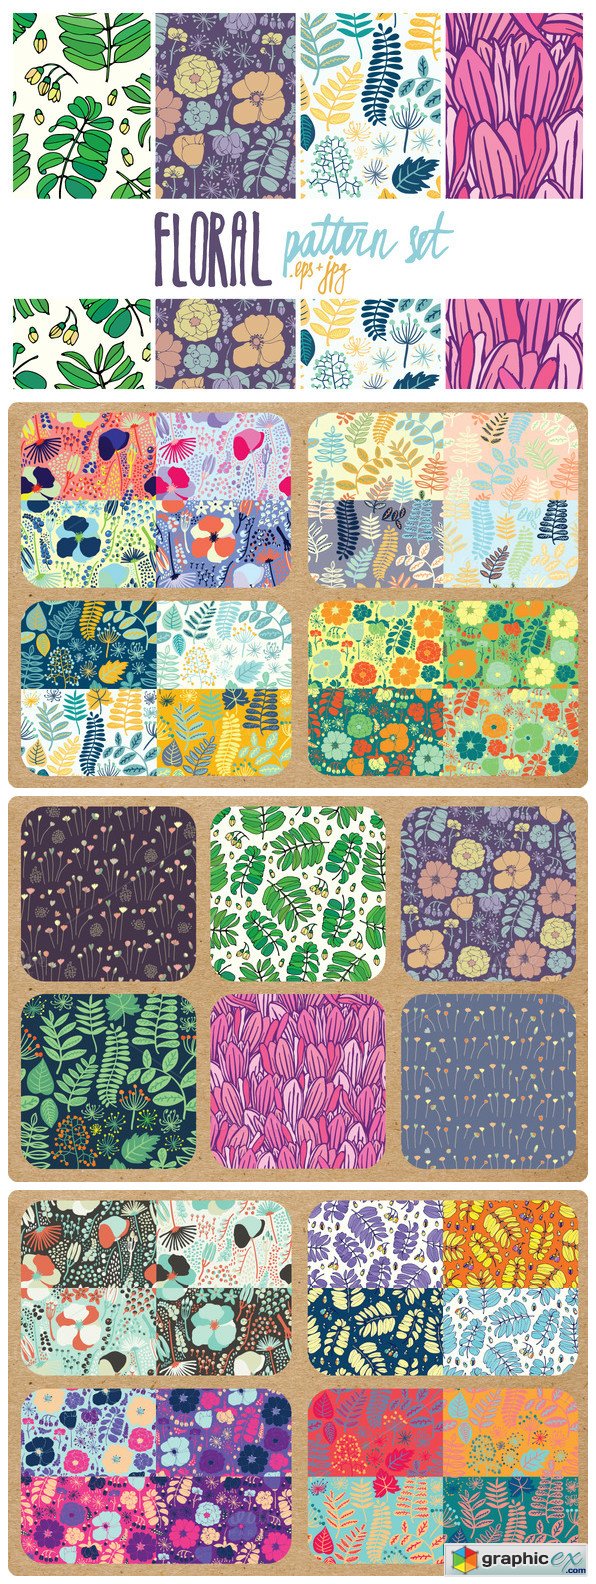 23 floral pattern set